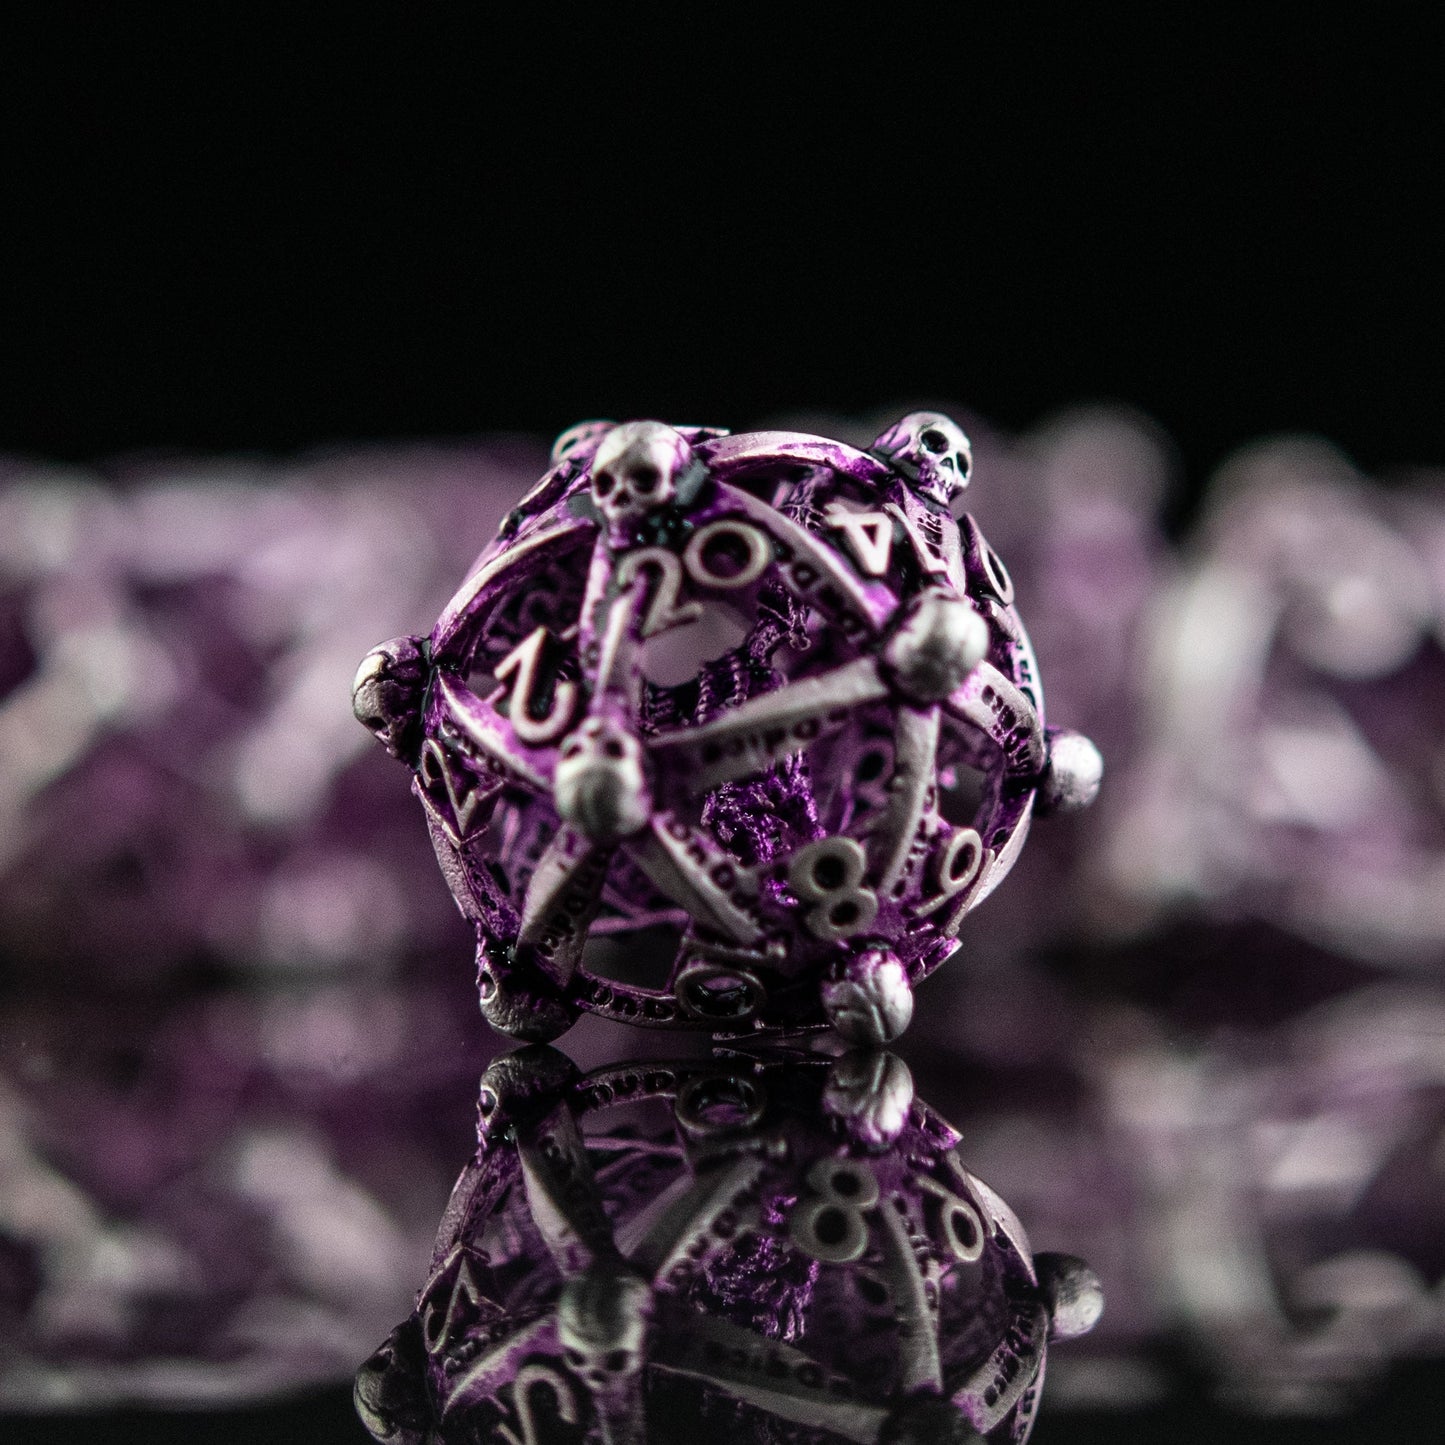 Juego de dados de metal hueco Draco Immortui - Púrpura y plata